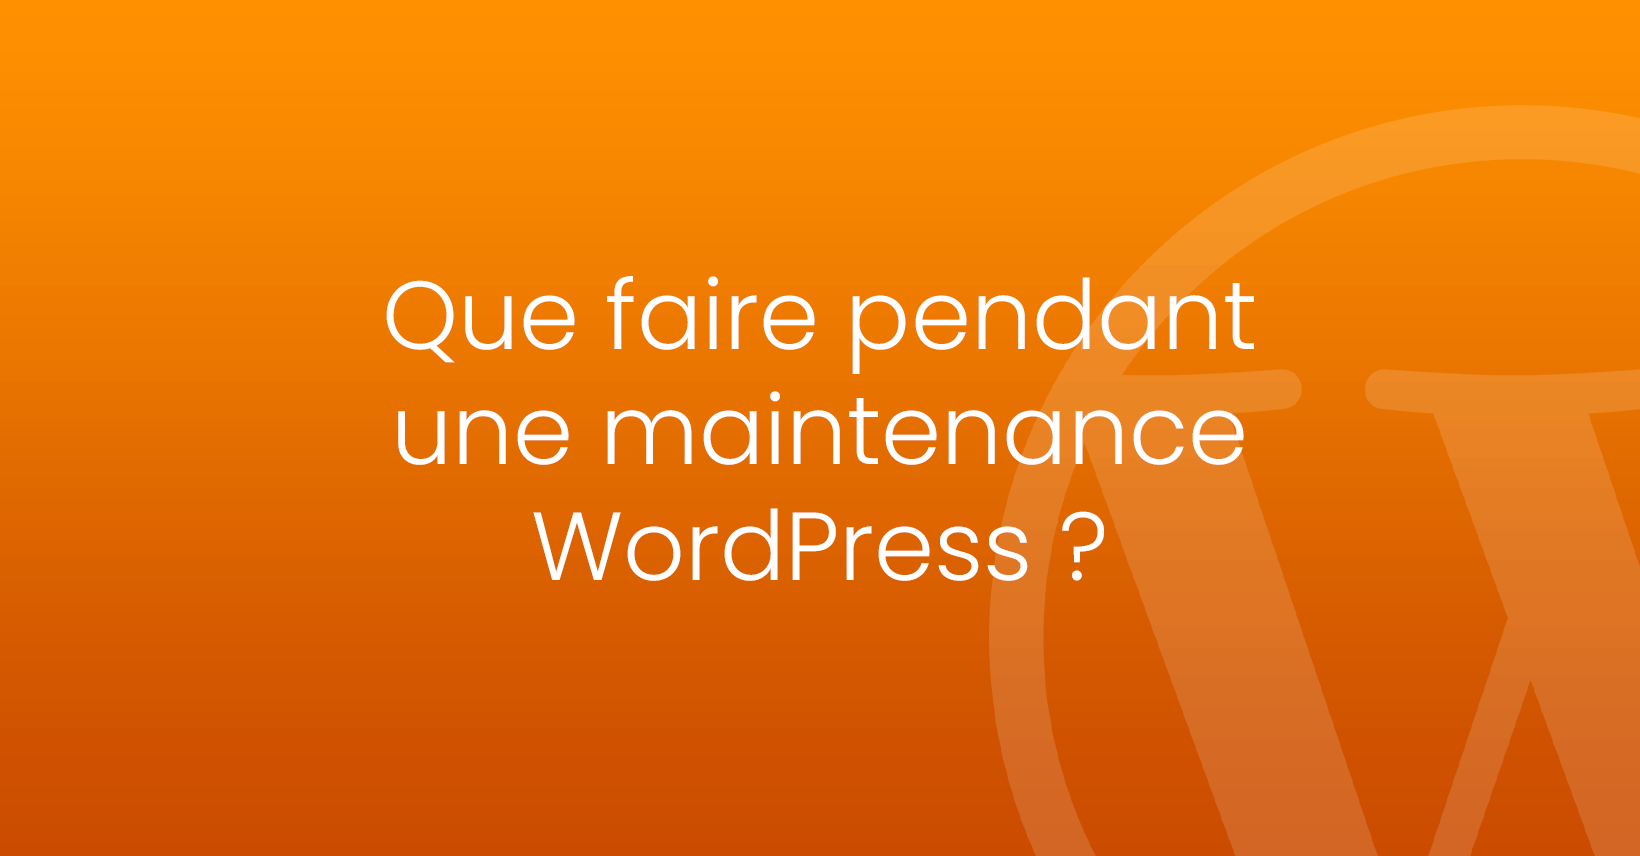 Que faire pendant une maintenance WordPress ?